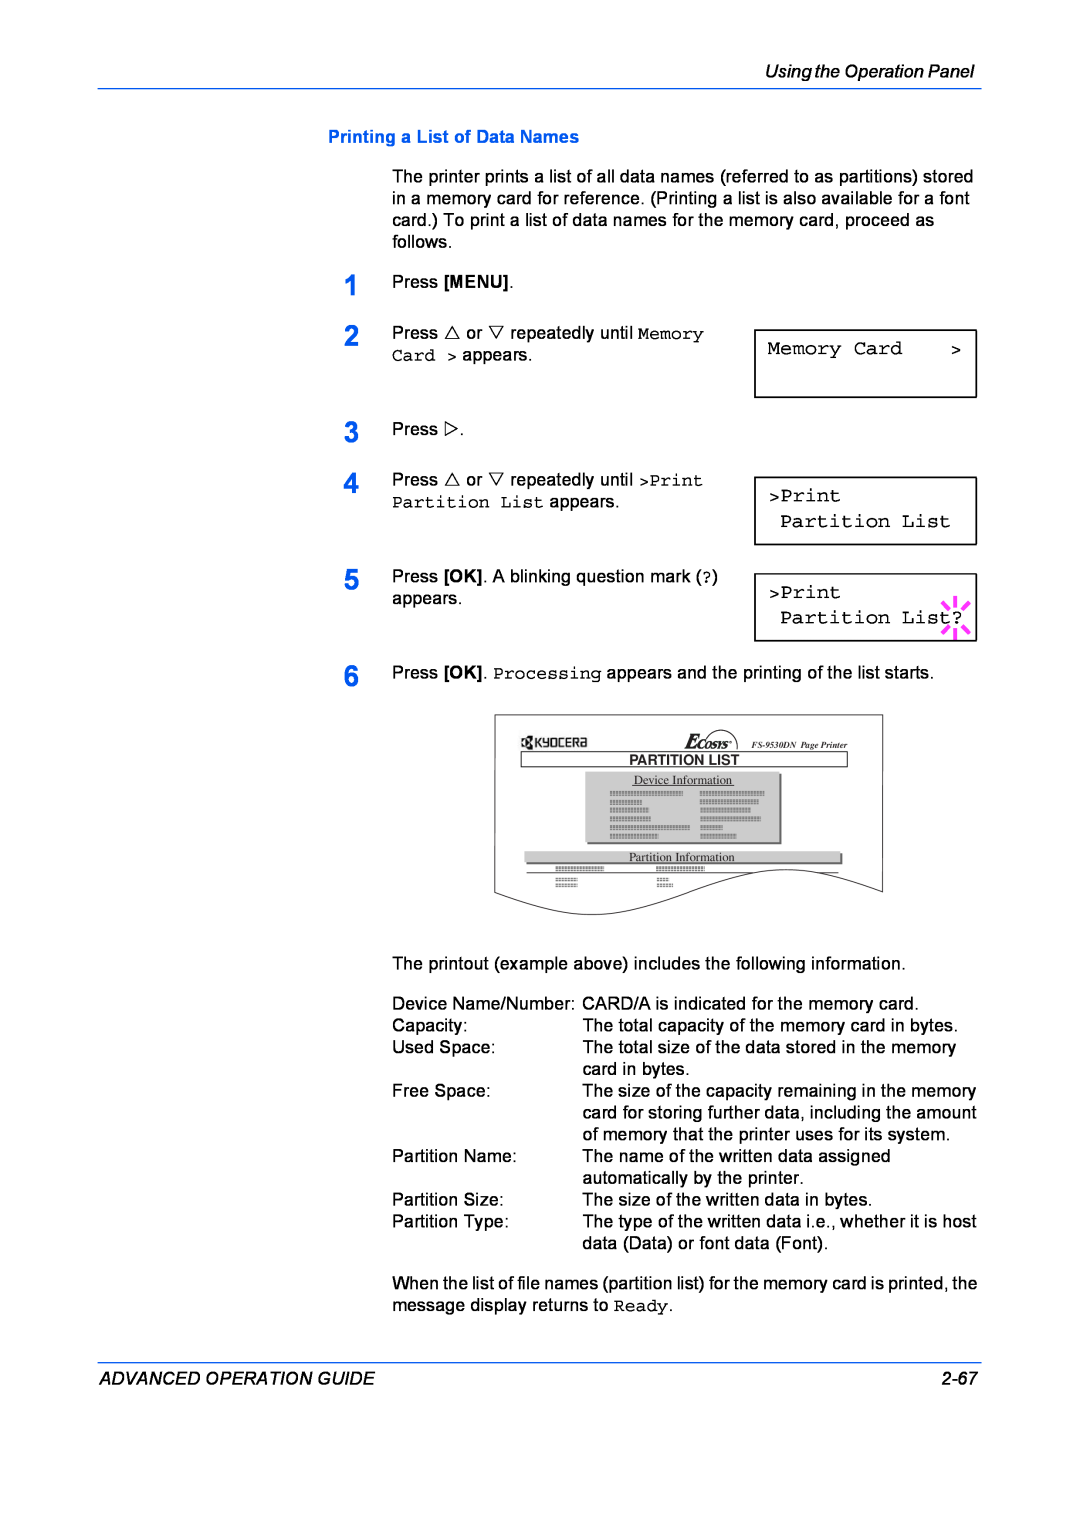 Kyocera 9530DN manual Memory Card, Print Partition List Print Partition List?, Printing a List of Data Names 